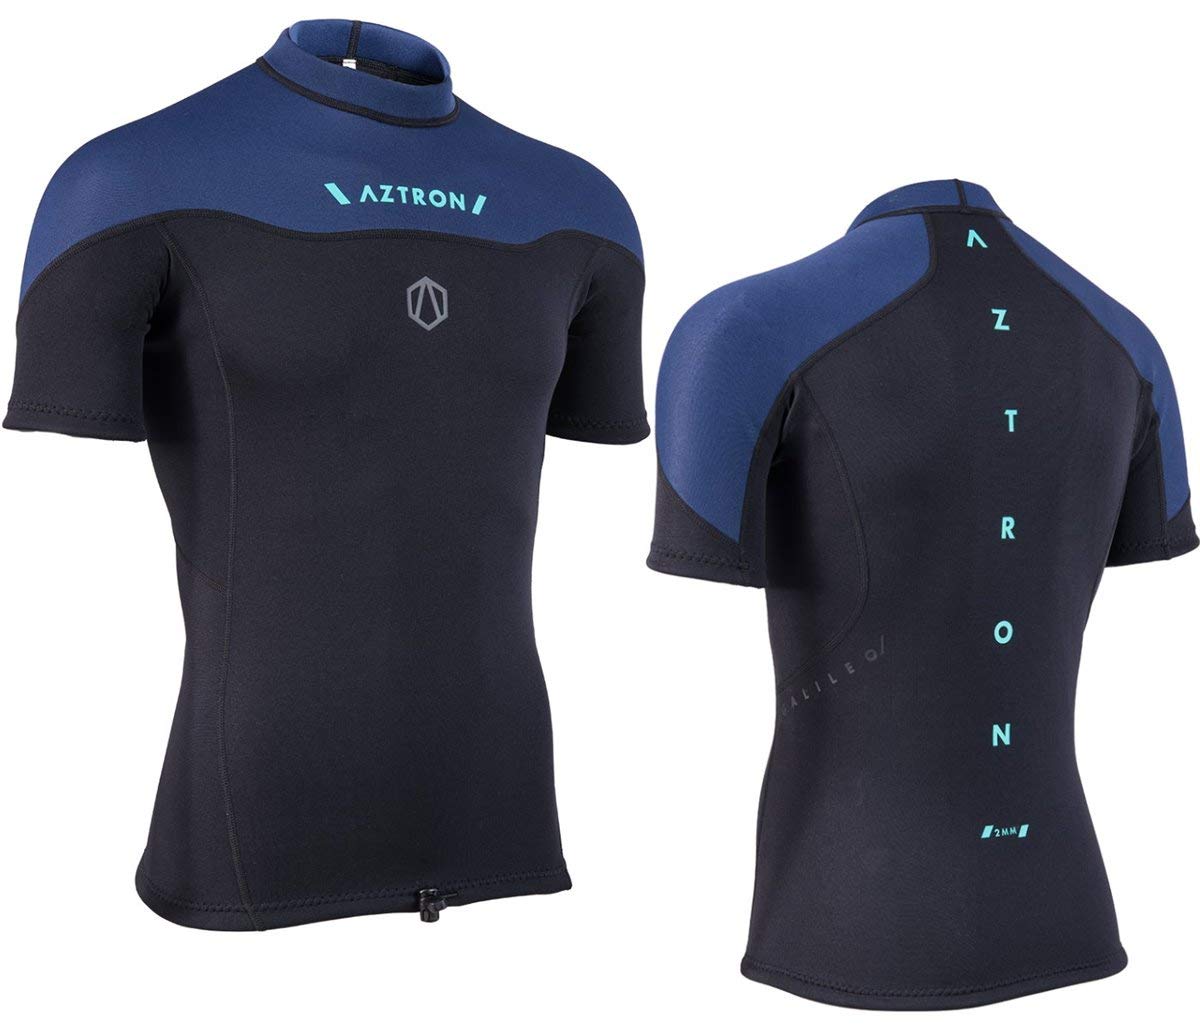 AZTRON Galileo Neo Top Neopren Shirt Oberteil 100% Super Stretch Neoprene 2mm